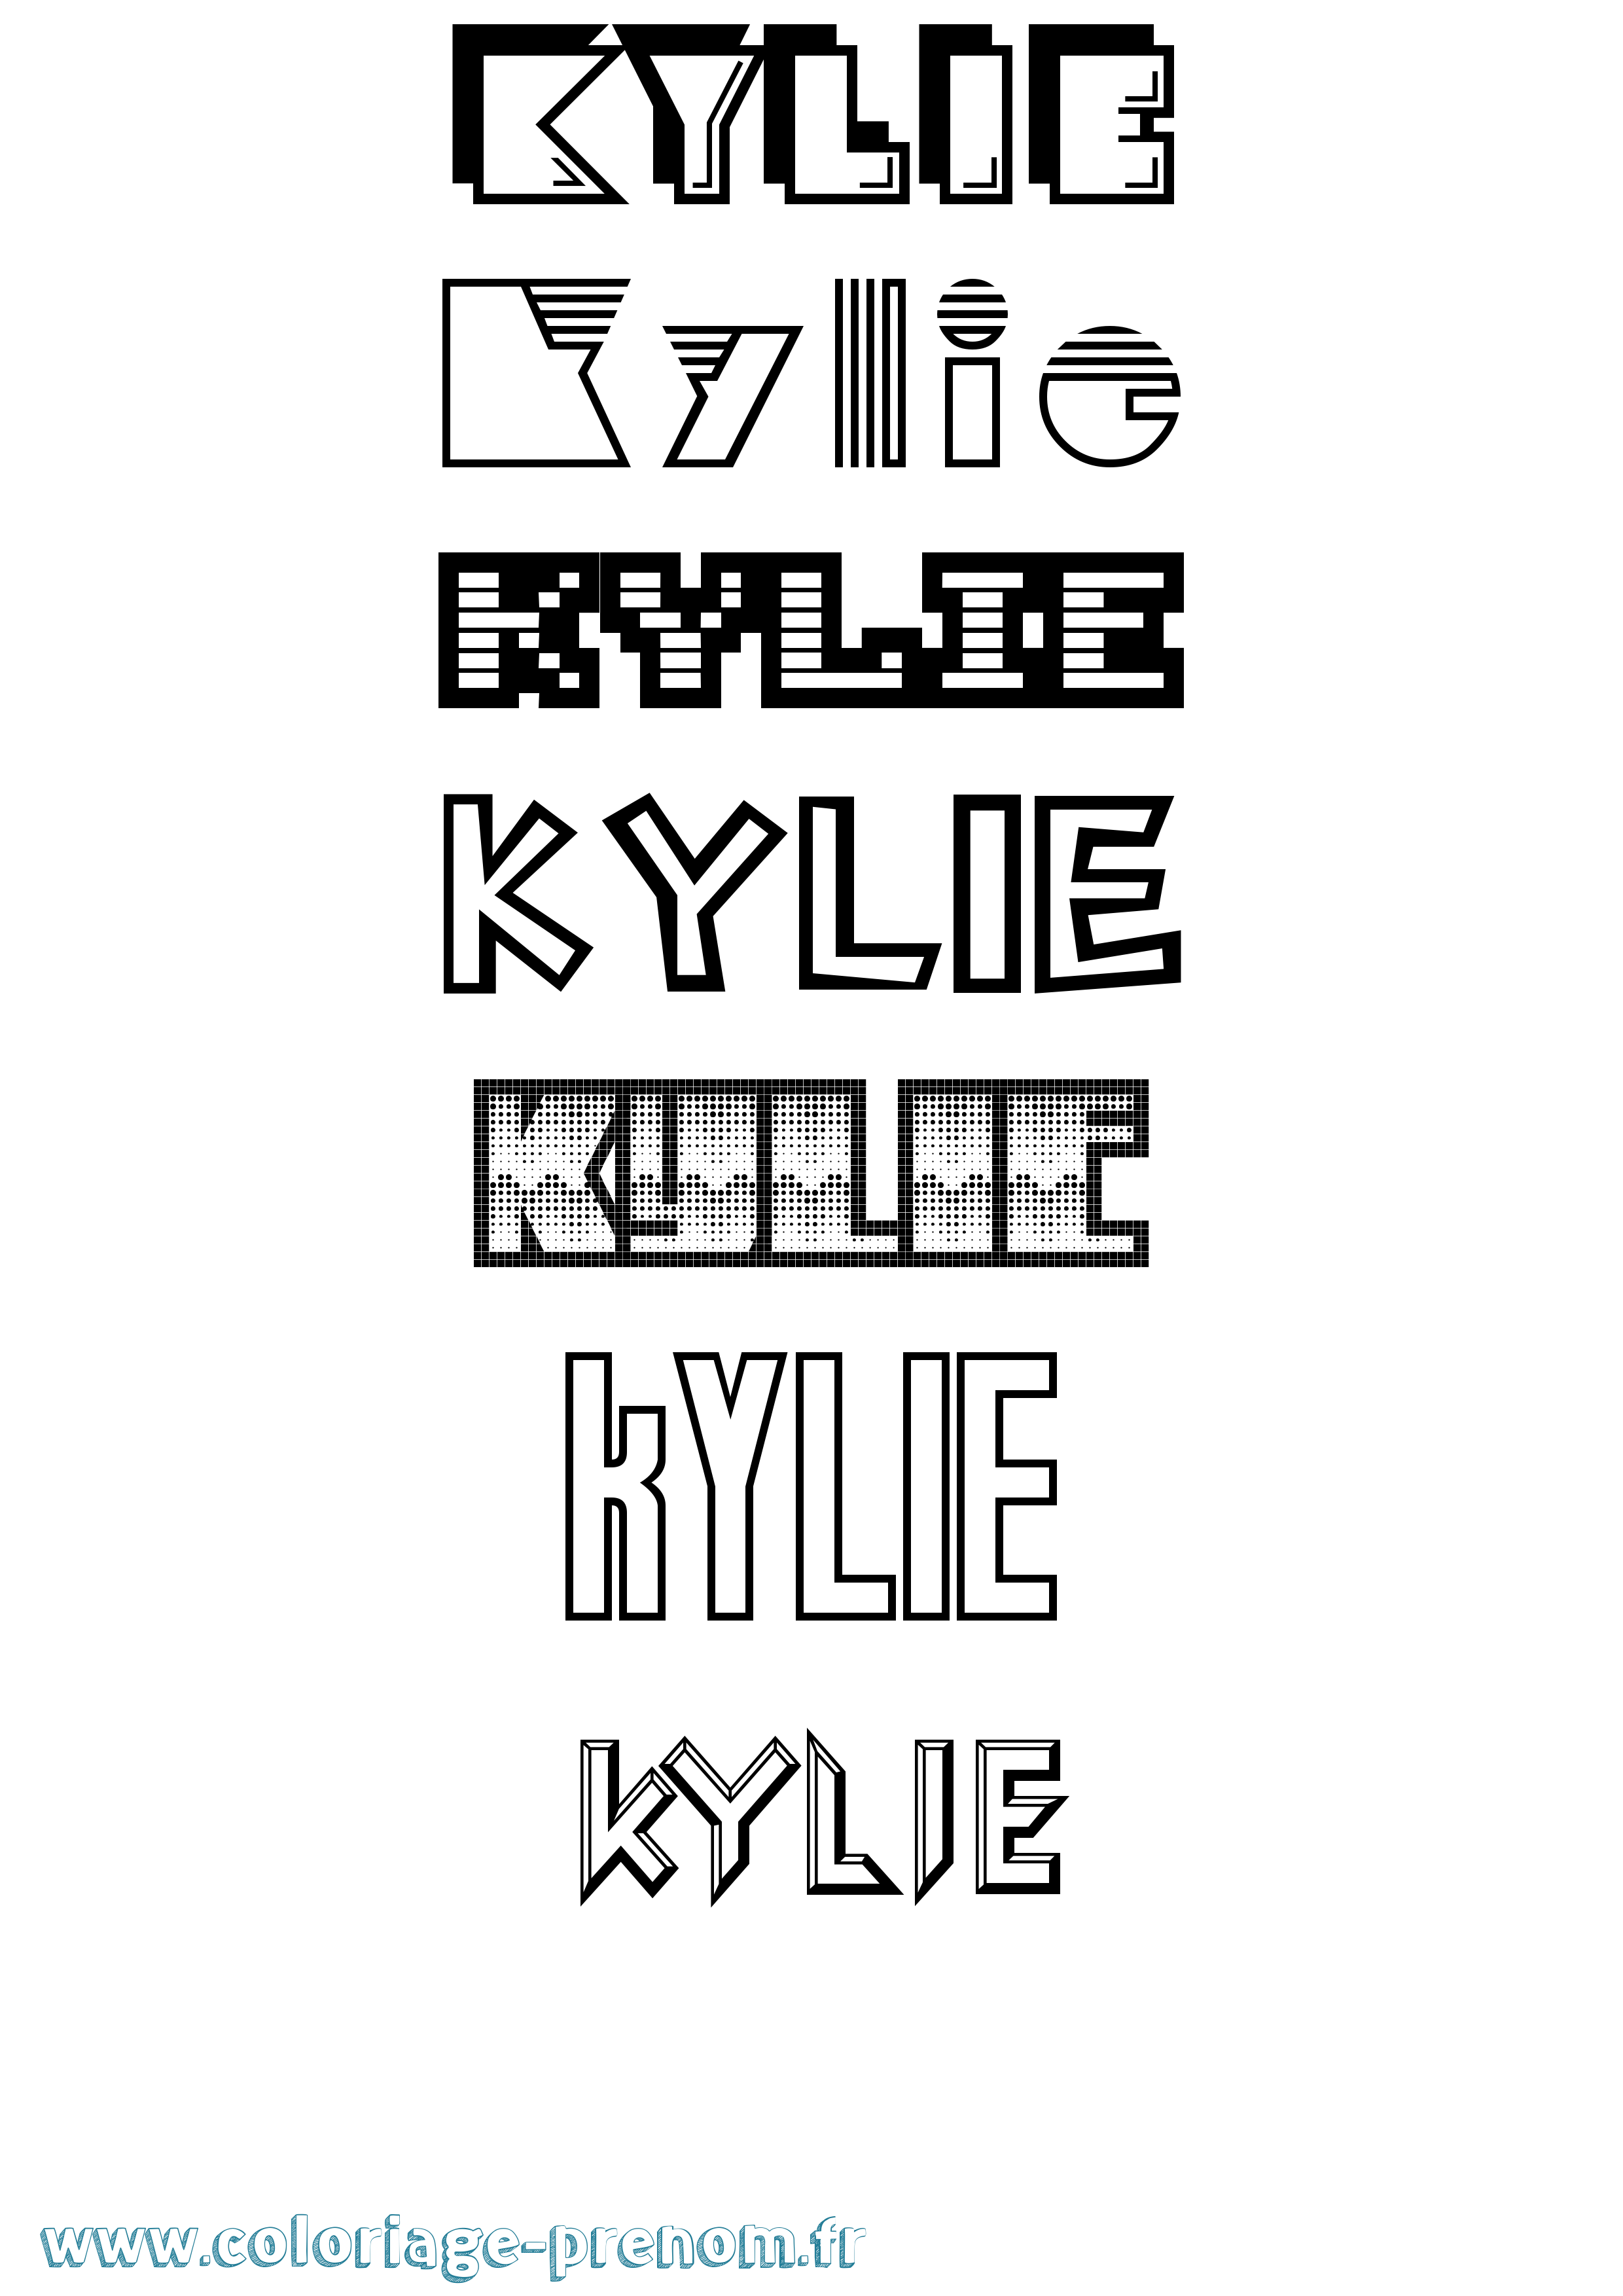 Coloriage prénom Kylie Jeux Vidéos